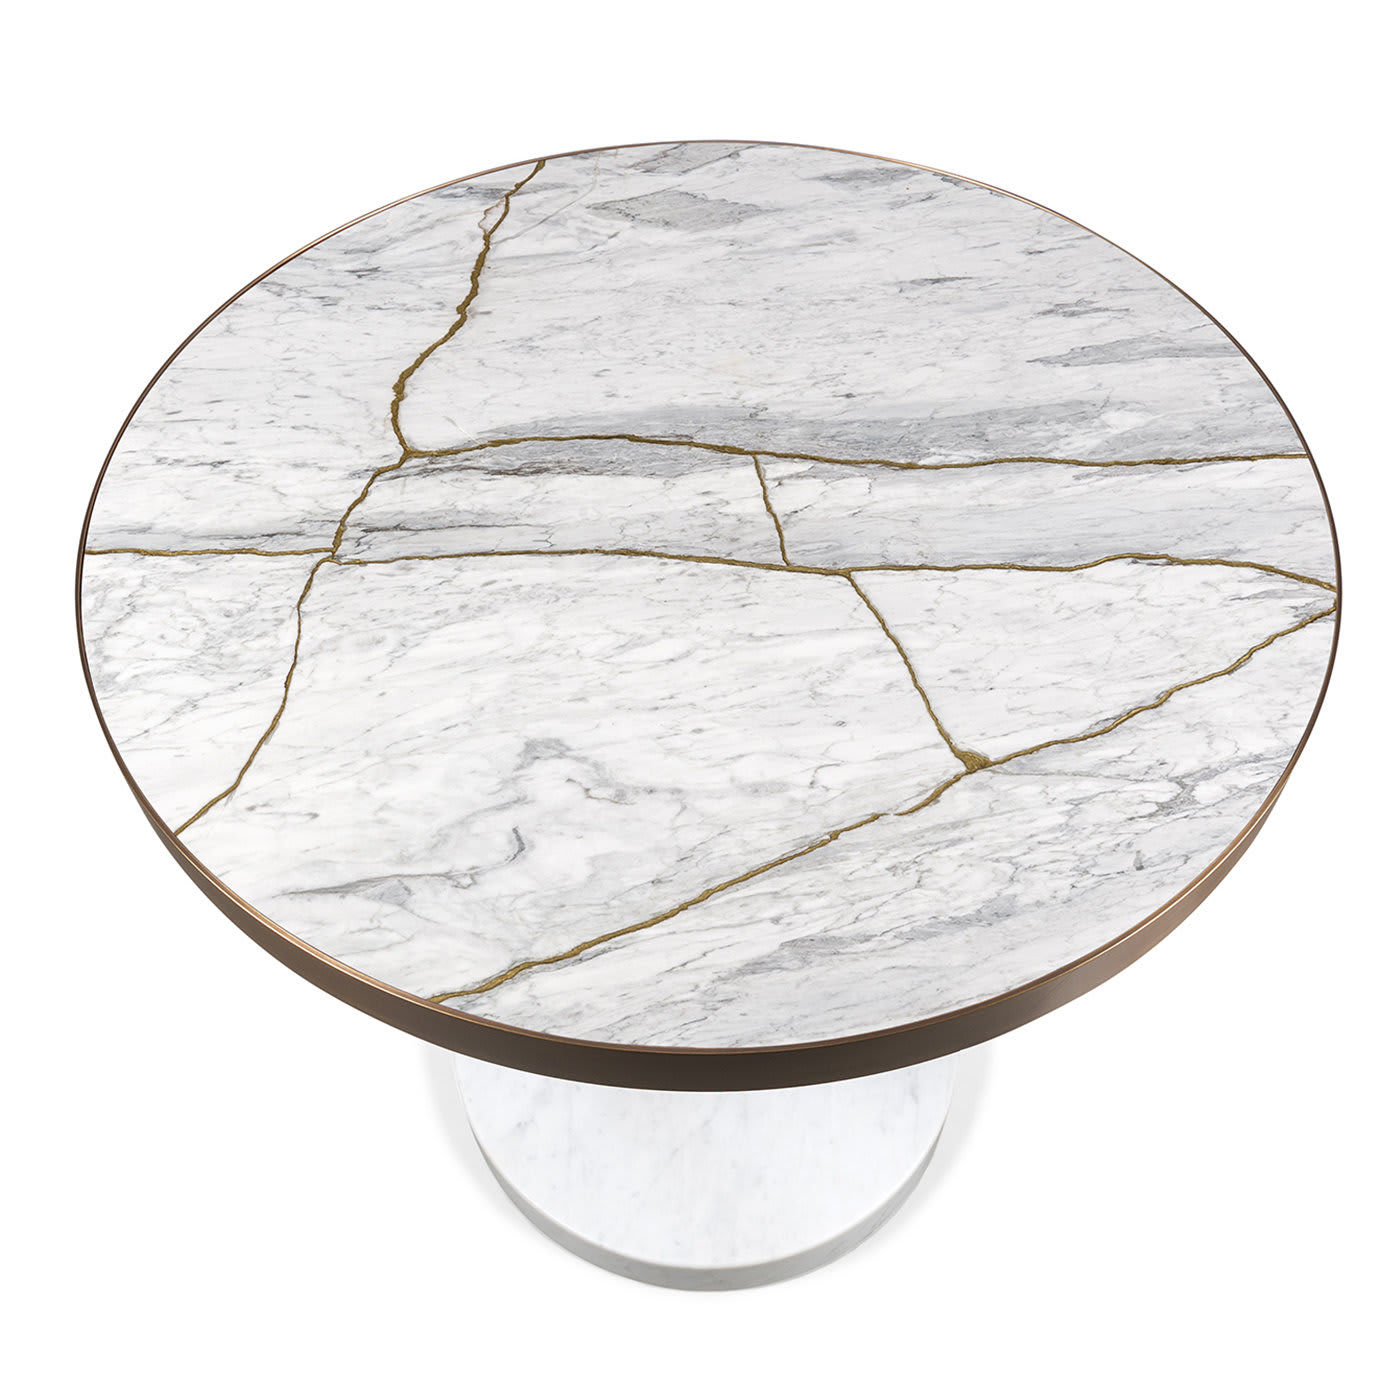 René Bistro Table in Bianco Nuvolato Lost Stone by Piero Lissoni - Salvatori